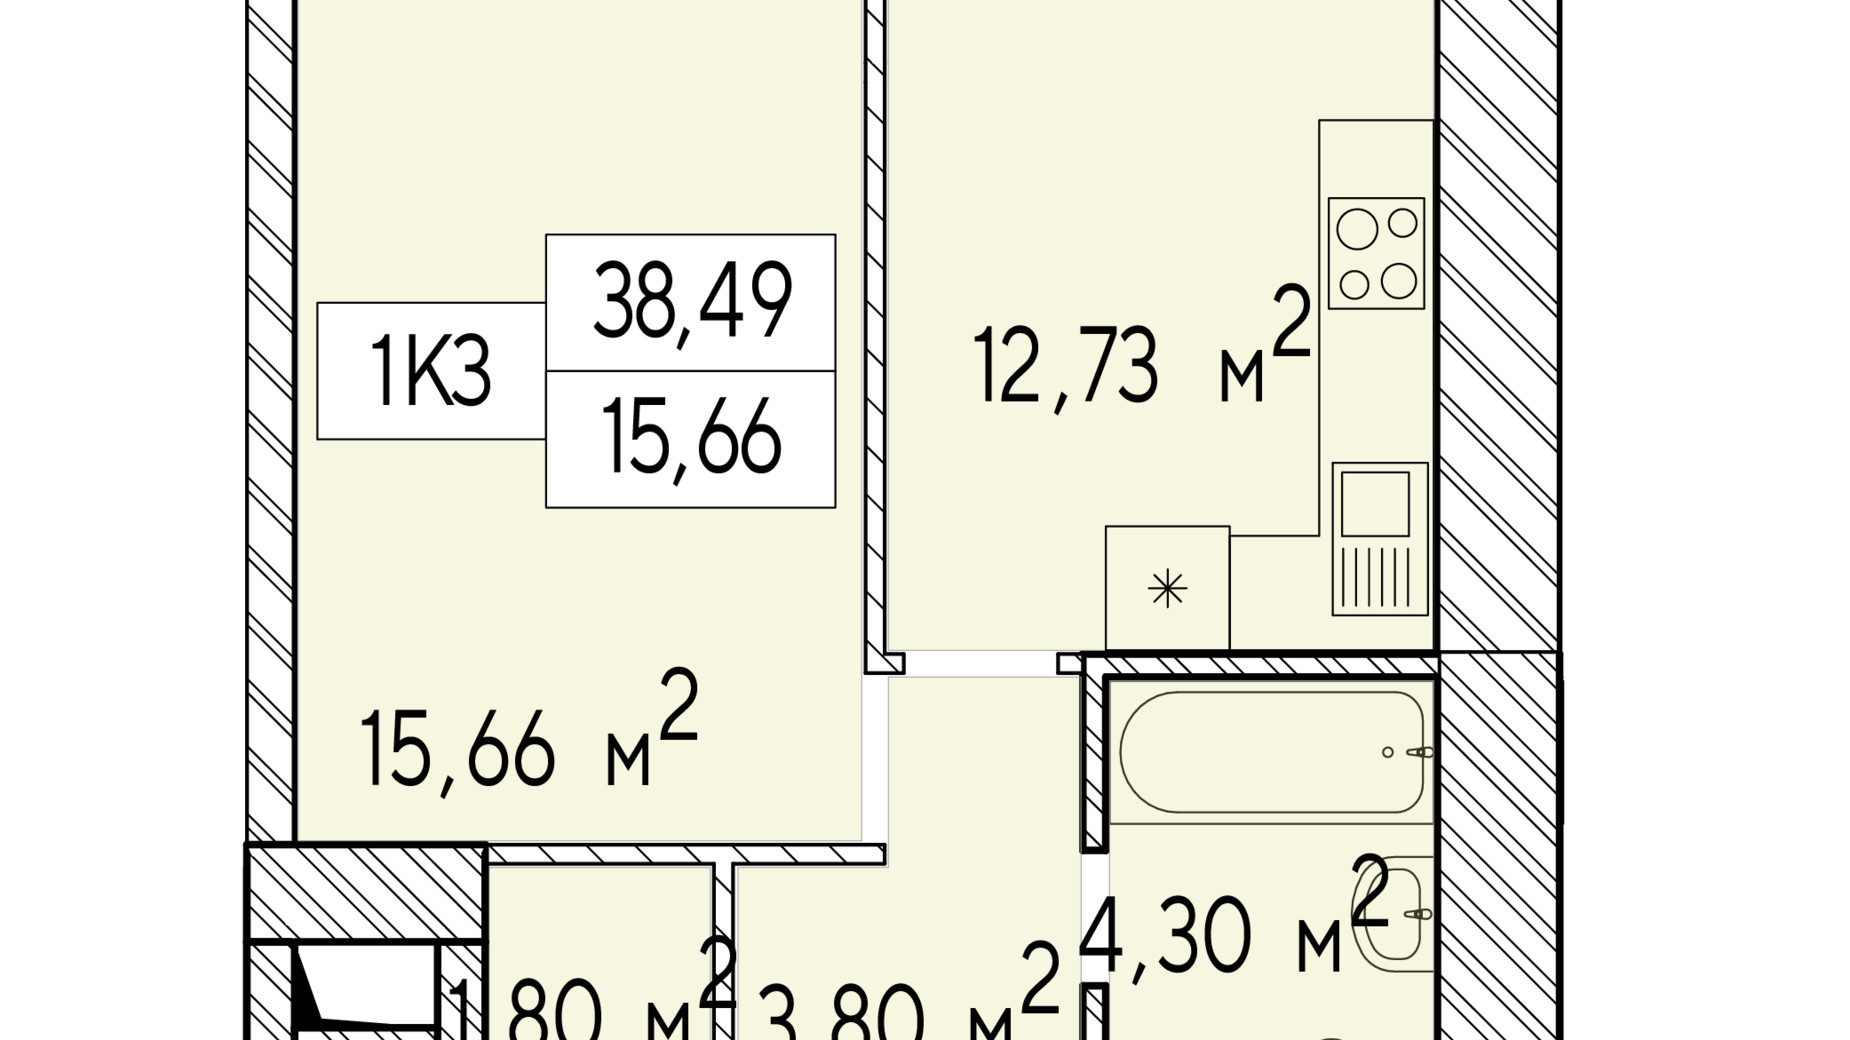 Планировка 1-комнатной квартиры в ЖК Фаворит Premium 38.49 м², фото 548457